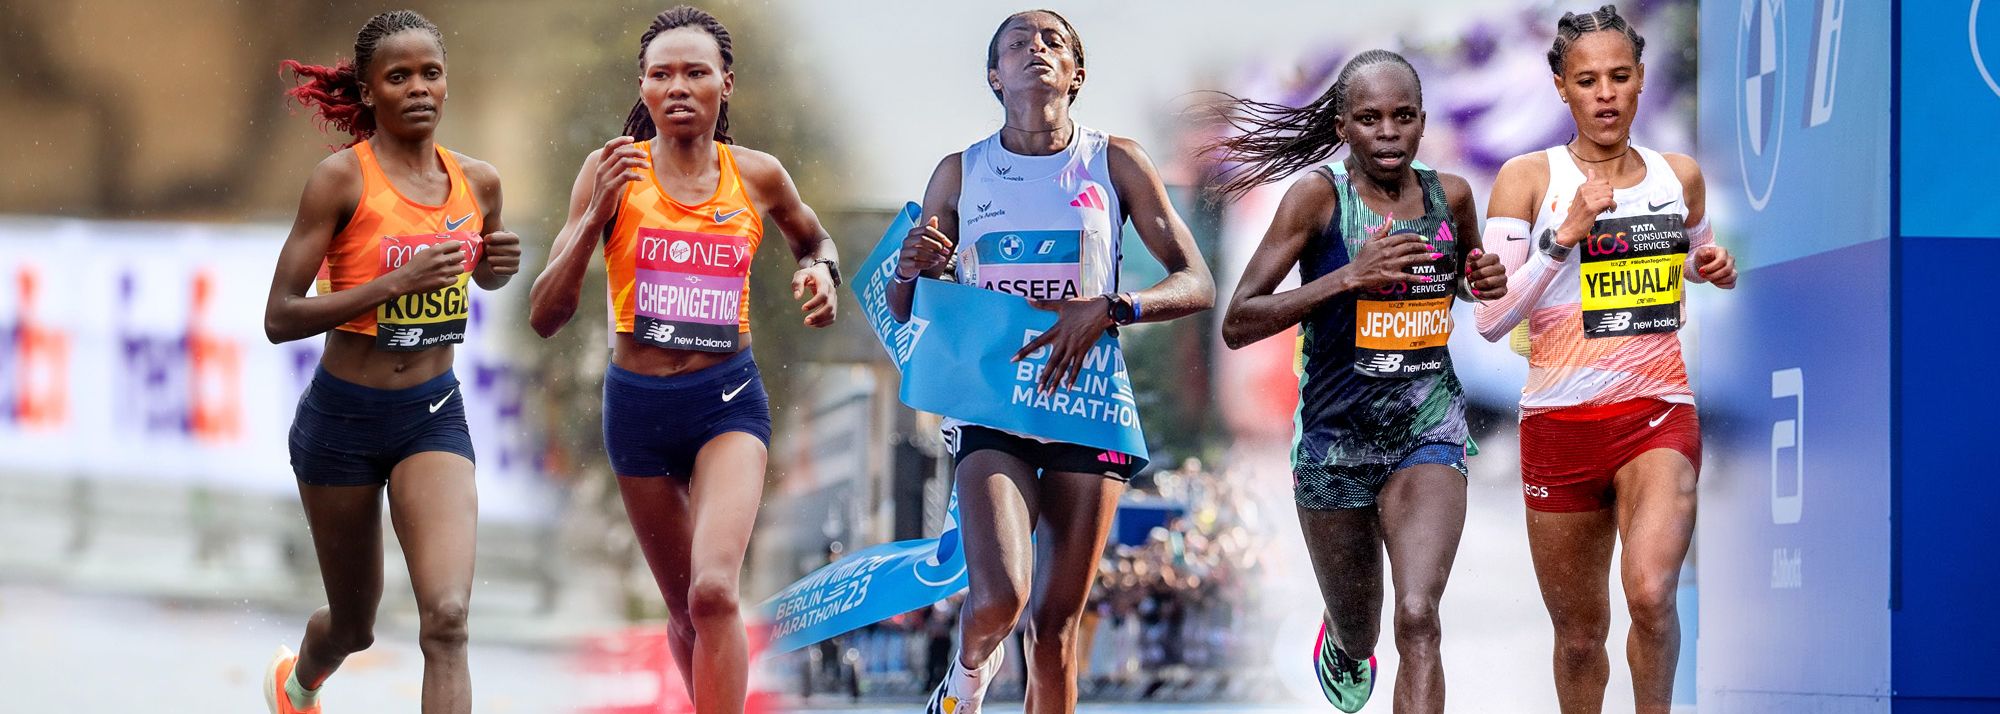 Kỷ lục thế giới chạy marathon “toàn nữ” có thể bị xô đổ ở London?